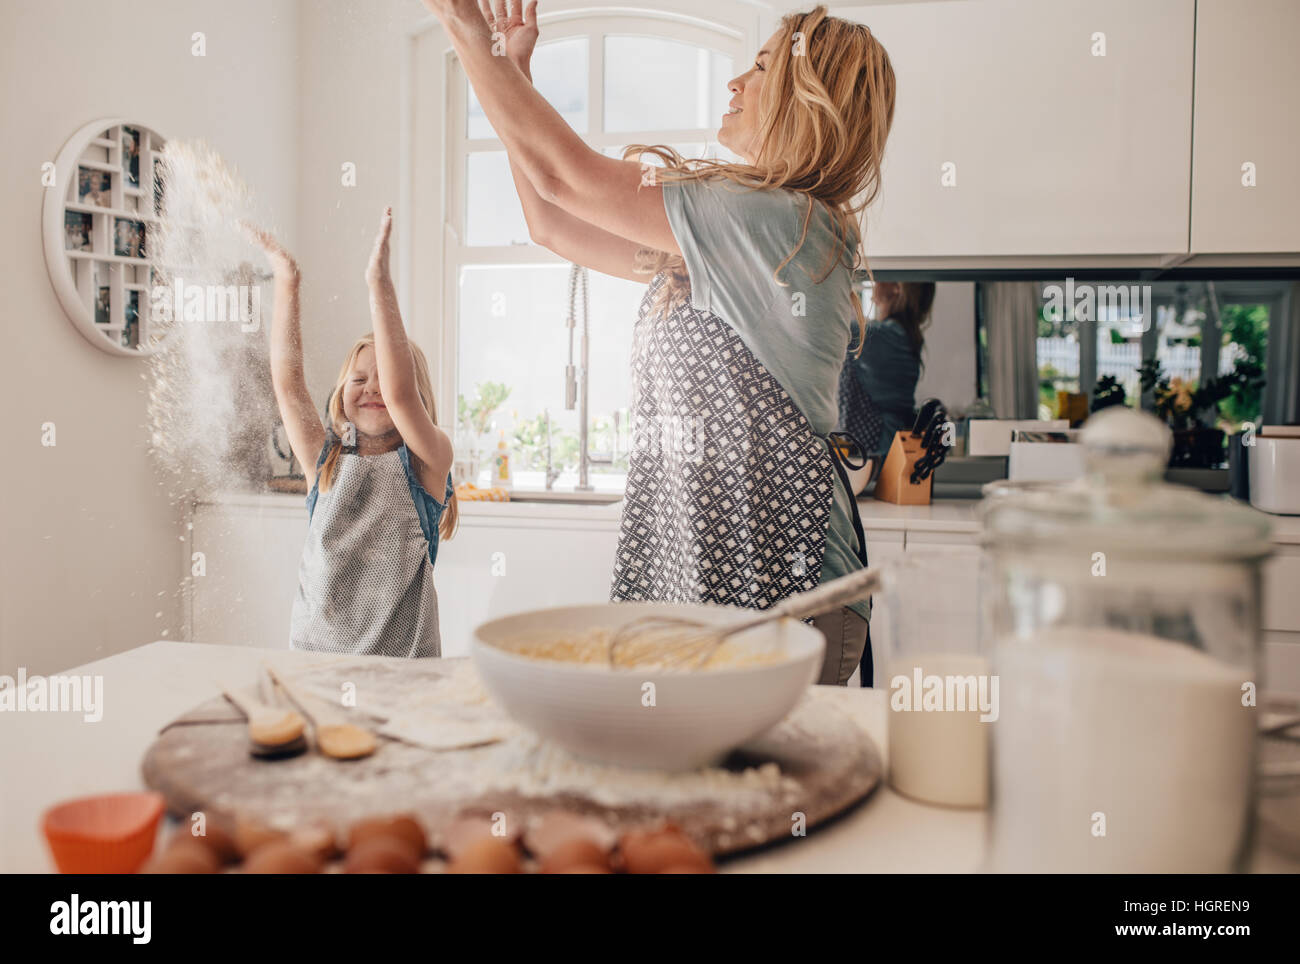 Glückliche junge Familie Spaß in die Küche werfen Mehl in Luft. Mutter und Tochter machen Teig in Küche. Stockfoto